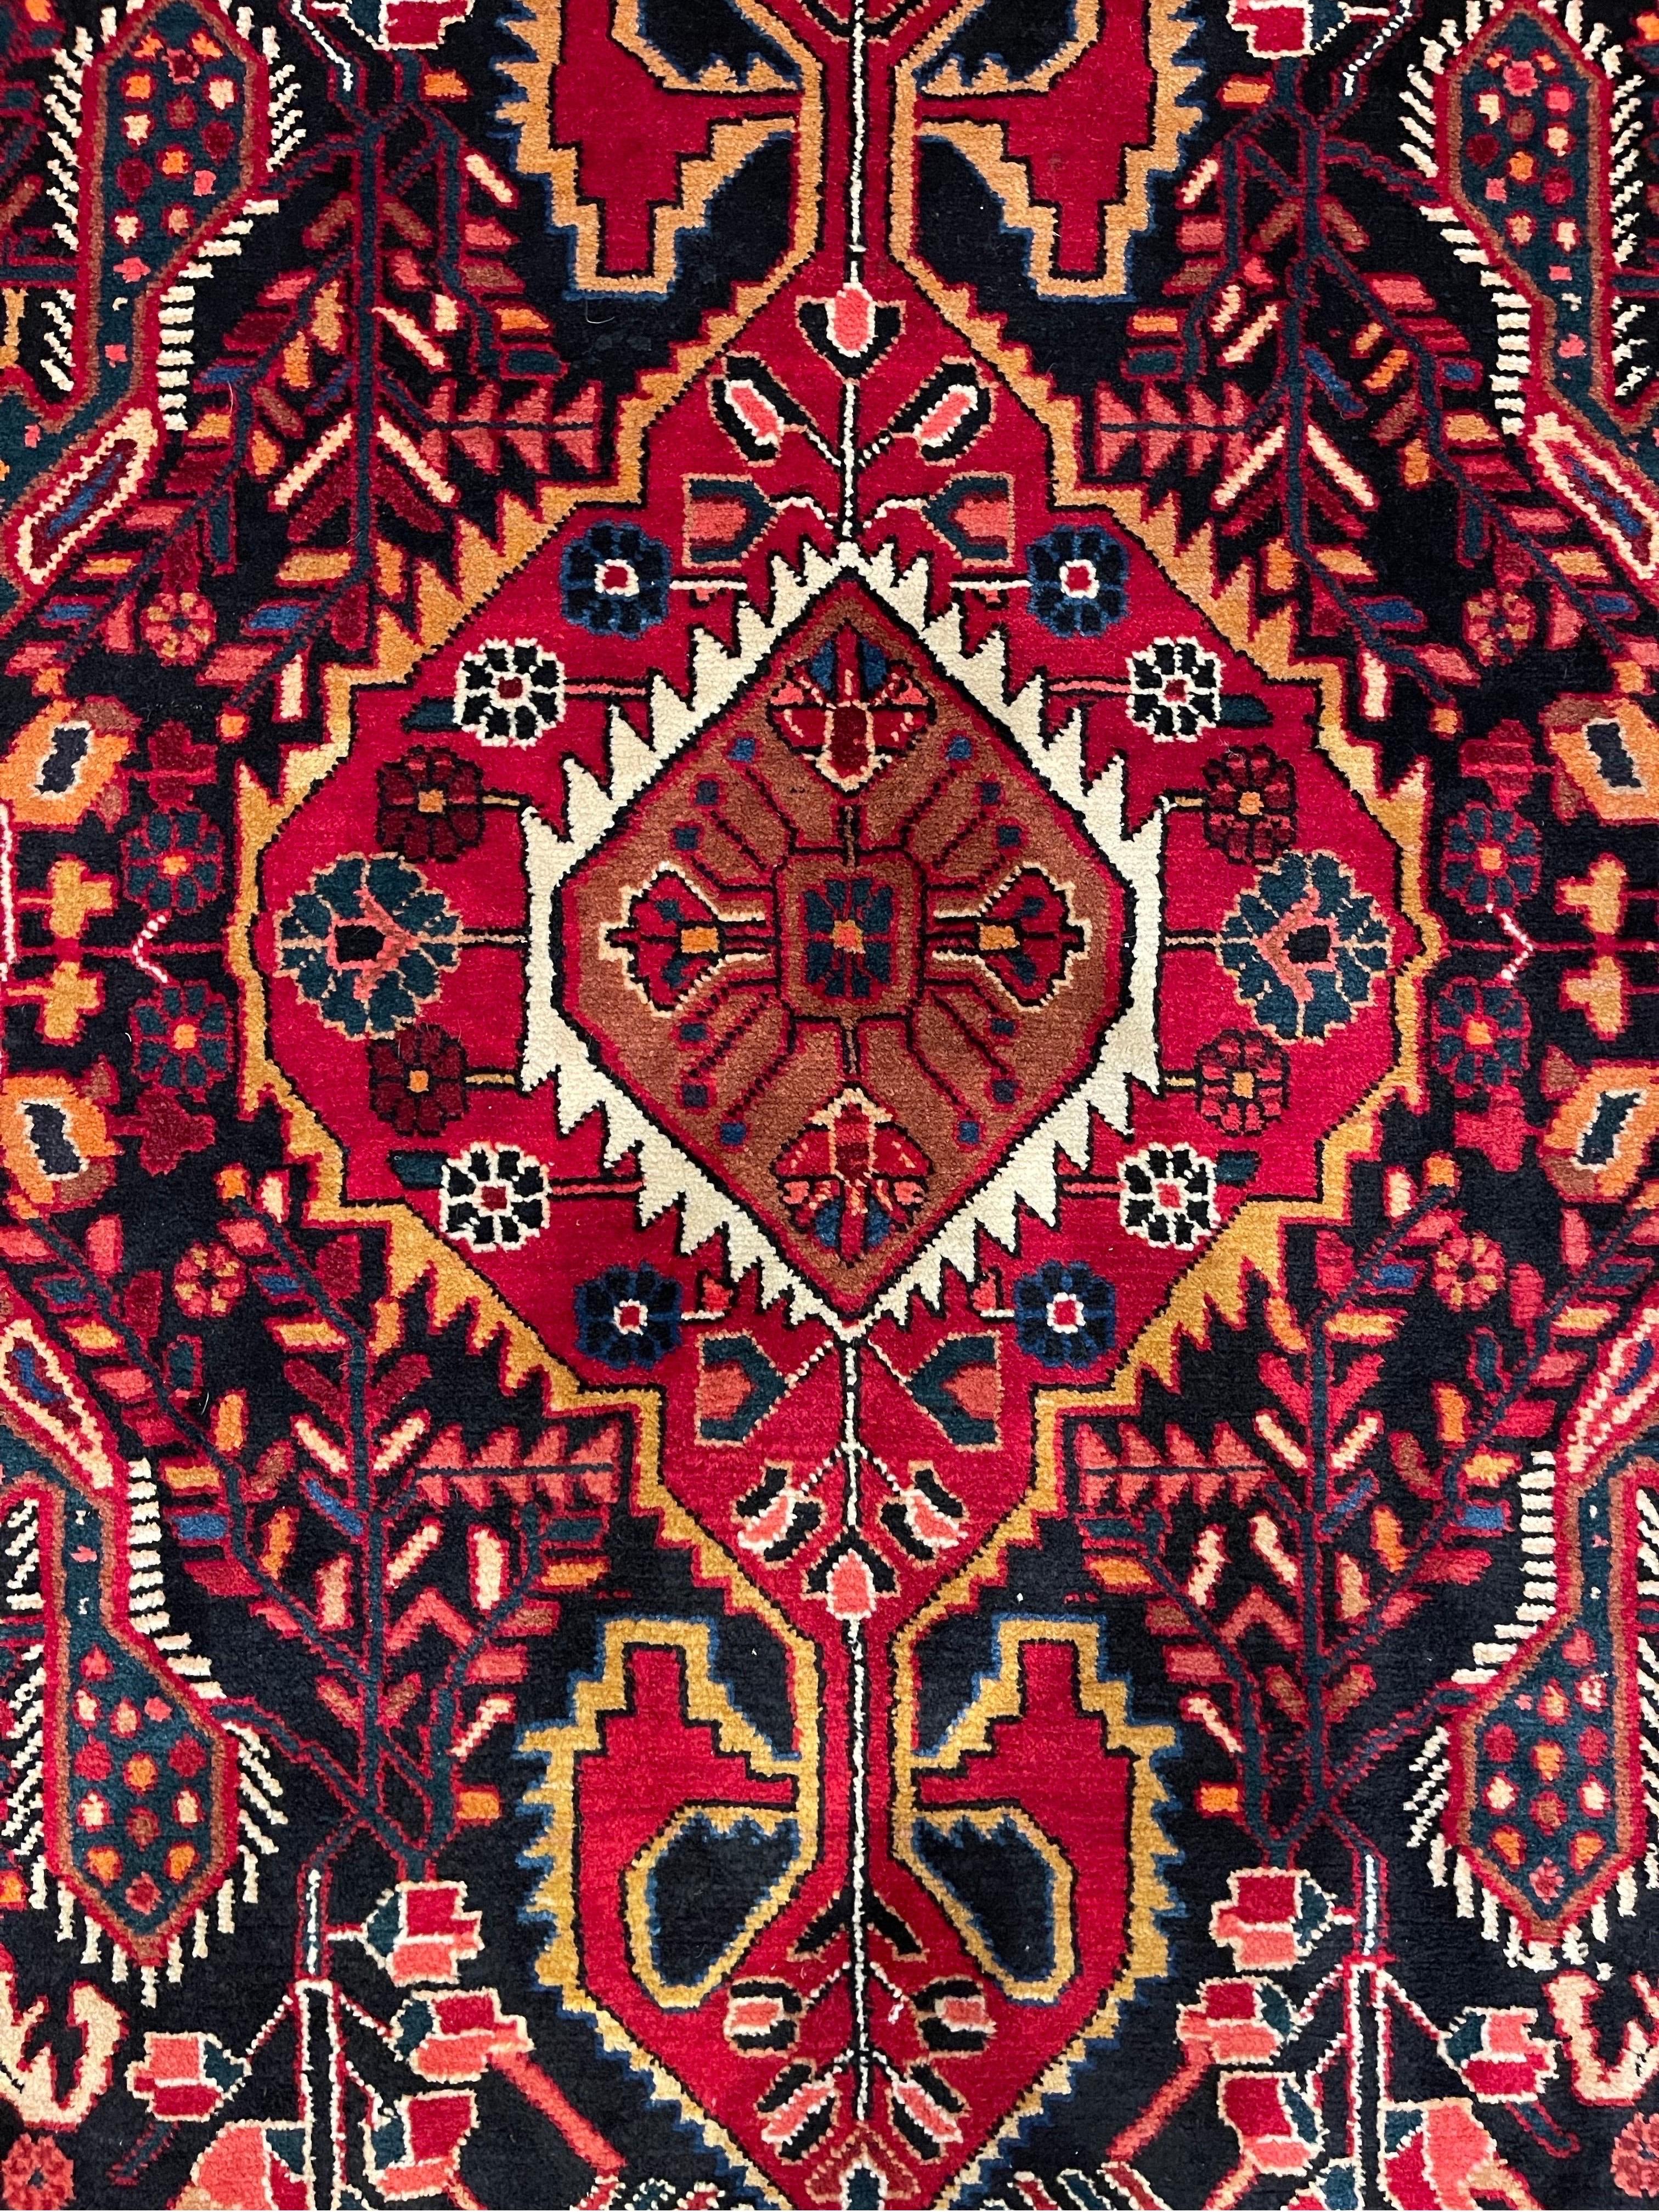 Les tapis Bakhtiari sont connus pour être les plus brillants et les plus colorés de tous les tapis nomades. Les tapis Bakhtiari sont tissés à la main par la tribu Bakhtiari, l'une des plus anciennes et des plus connues des industries de tapis